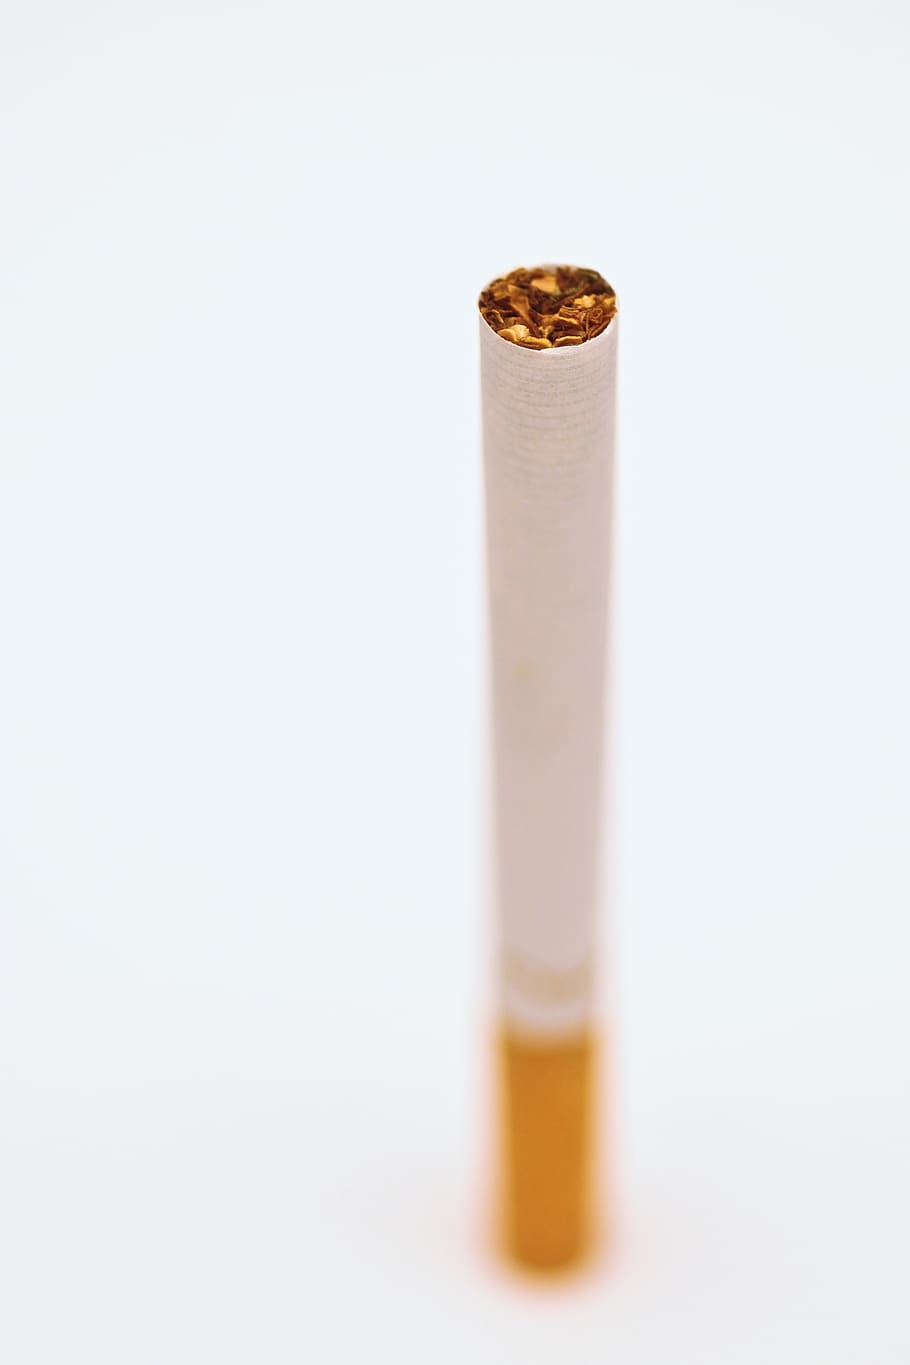 cigarro, tabaco, fumaça, fundo branco, foto de estúdio, lápis, dentro de casa, sem pessoas, objeto único, borracha